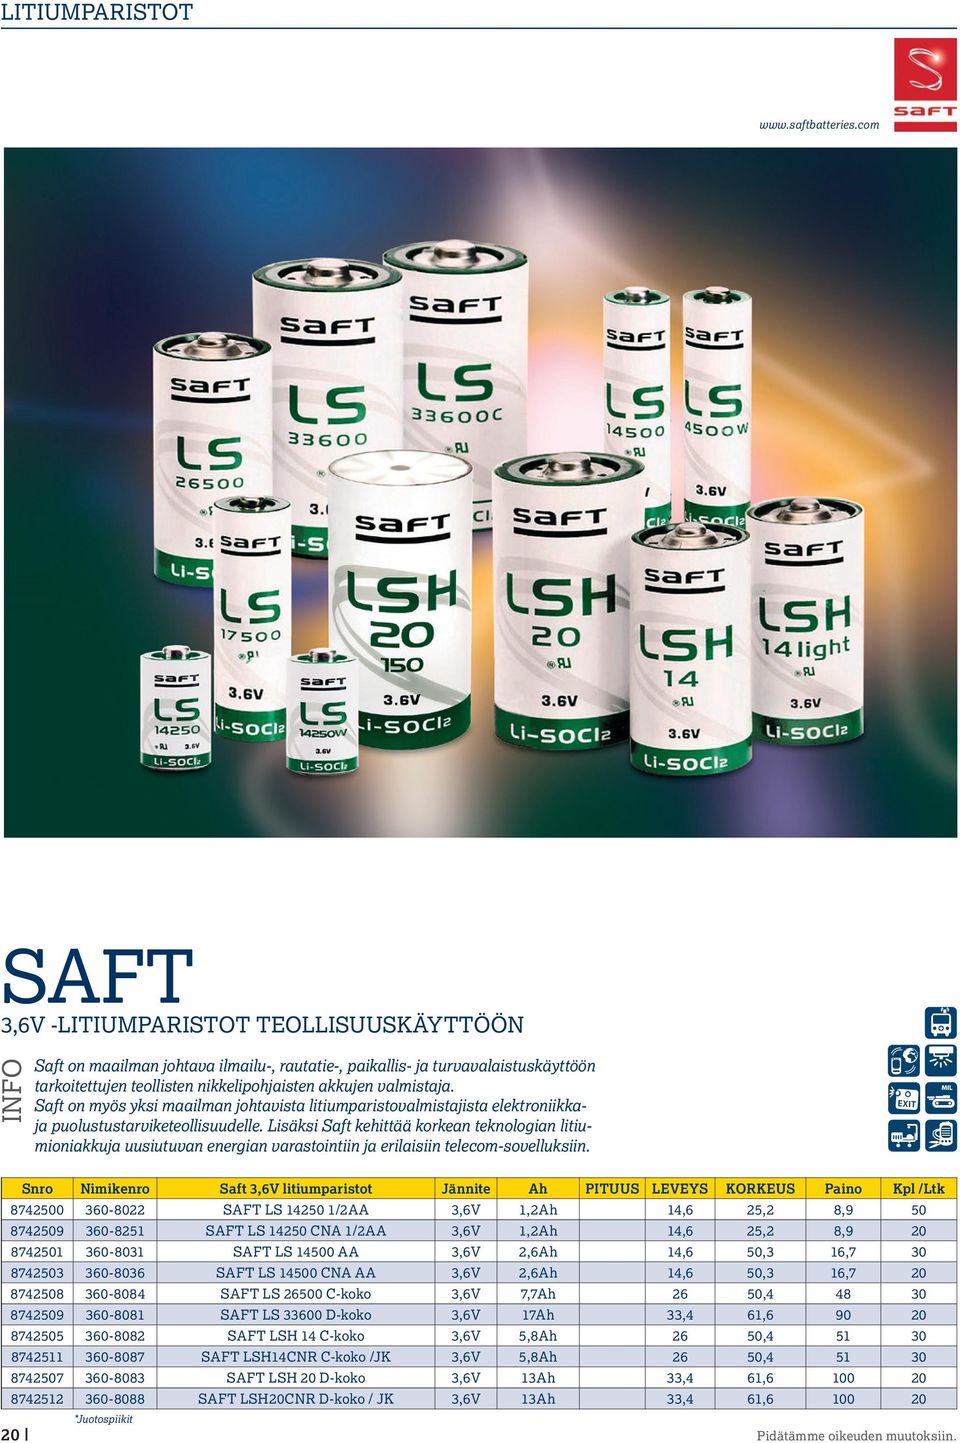 Saft on myös yksi maailman johtavista litiumparistovalmistajista elektroniikkaja puolustustarviketeollisuudelle.